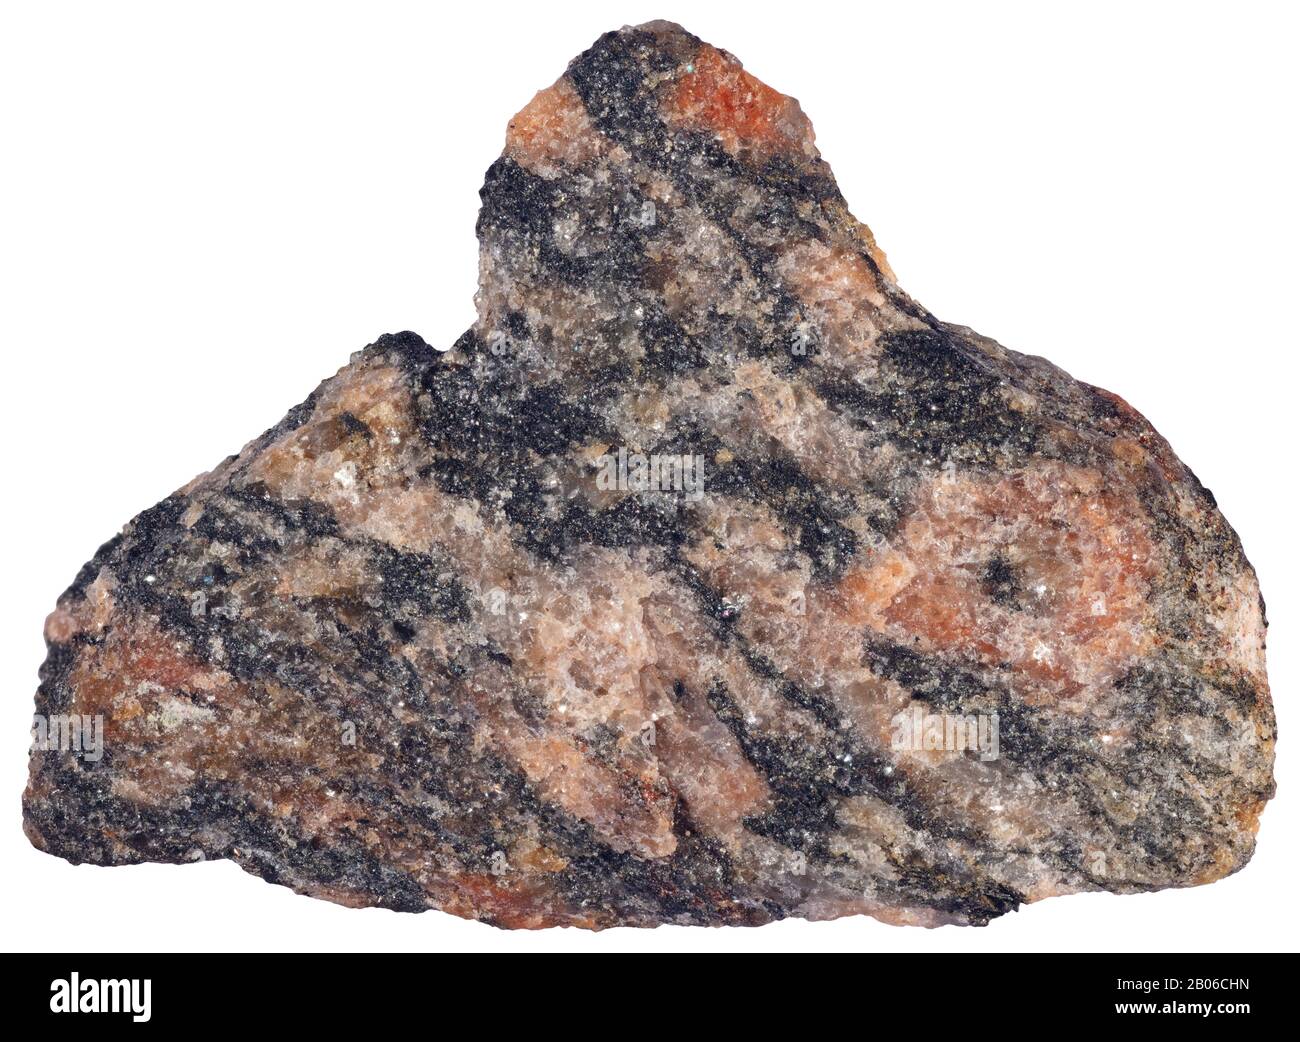 Hornblende-Granit, Plutonic, Ottawa EIN Granit mit Hornblende, ein felsisches plutonisches Gestein, im Allgemeinen Adamellit oder Granodiorit, das einen Amph enthält Stockfoto